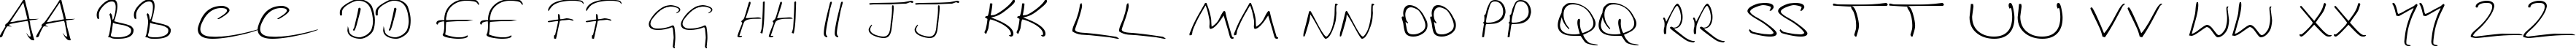 Пример написания английского алфавита шрифтом Douglas Adams Hand